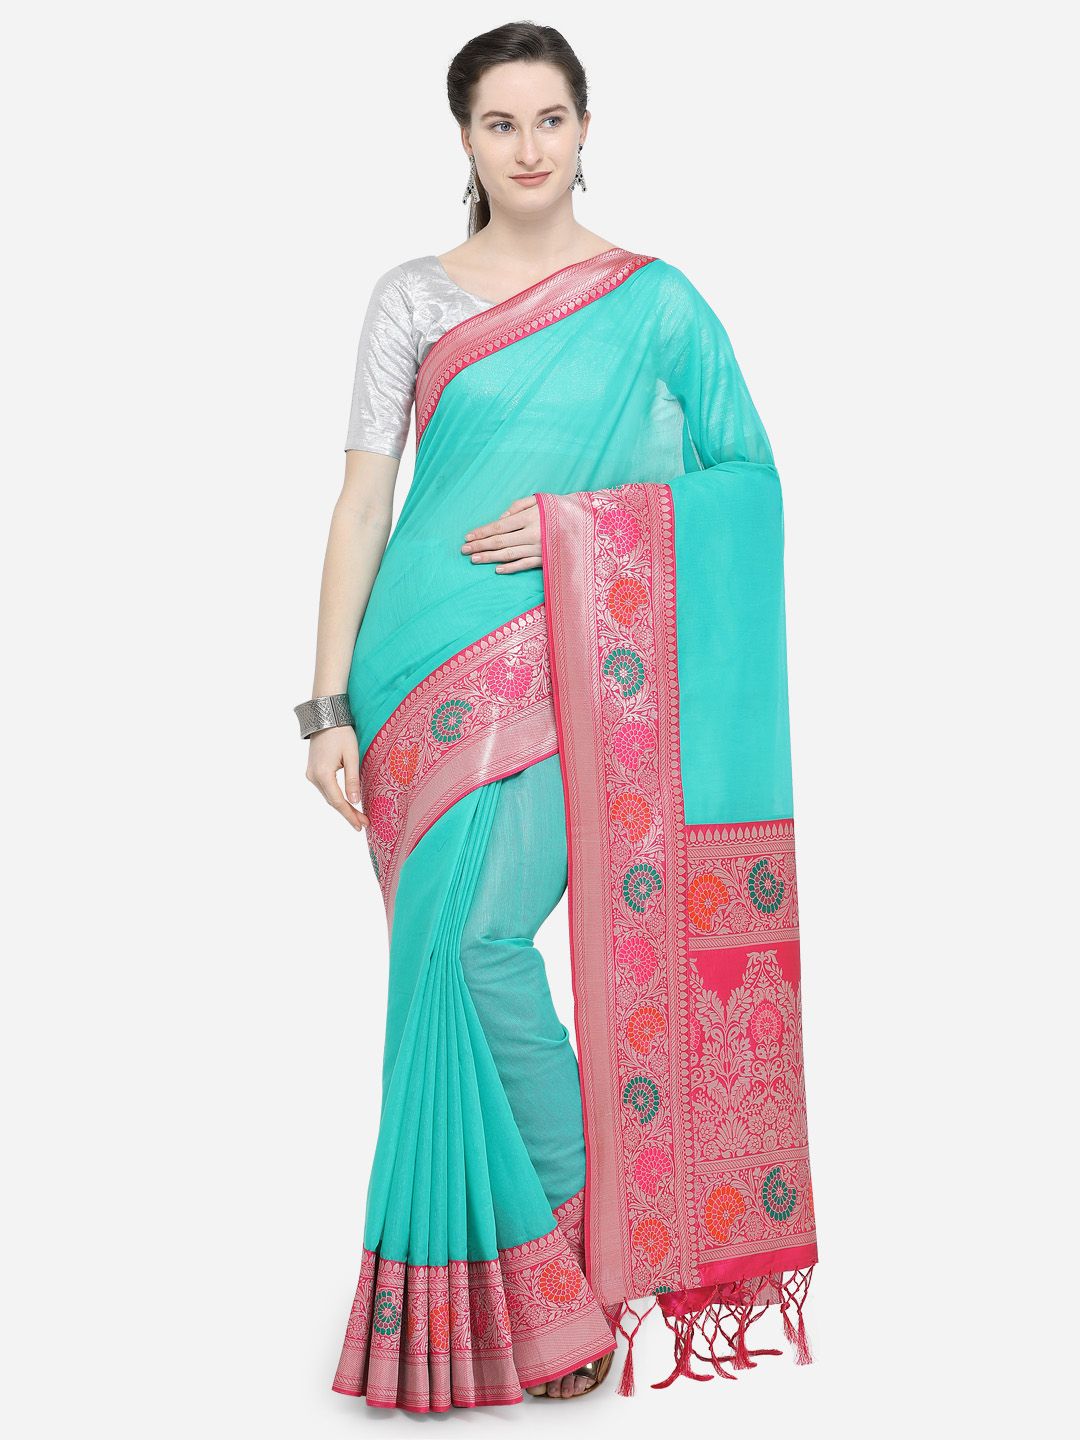 Varkala Silk Sarees Turquoise Blue & Pink Silk Cotton Woven Design Banarasi Saree Price in India